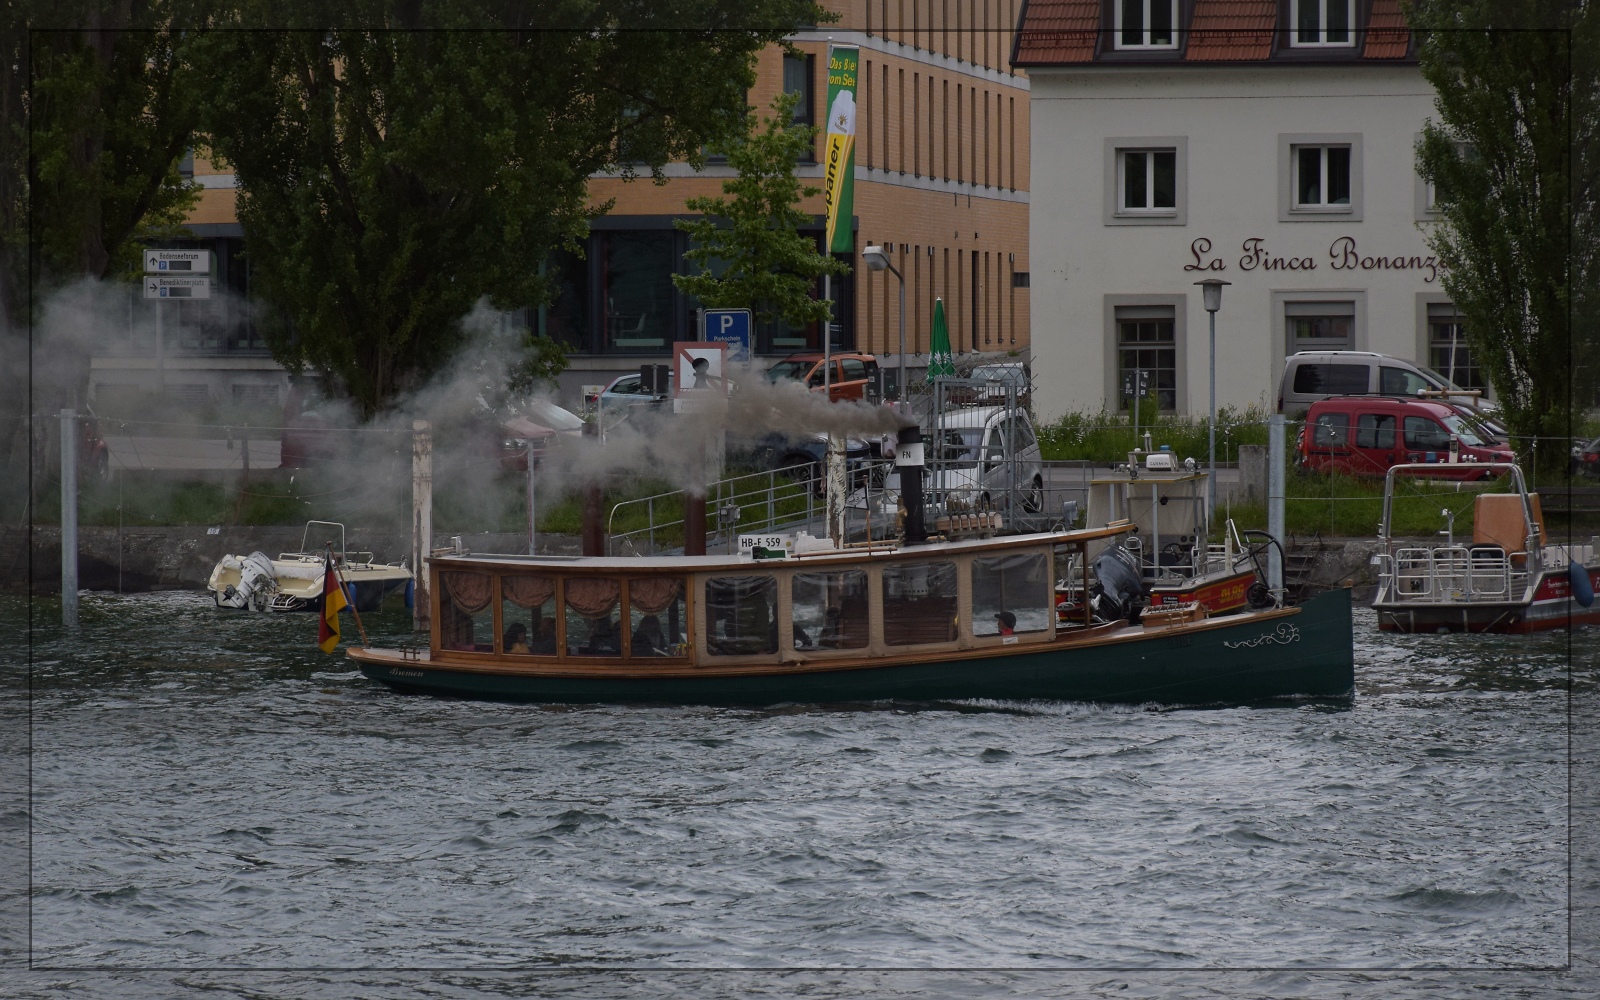 Vatertag in Konstanz.

Der moderne Leiterwagen ist dampfbetrieben und schwimmfähig. Die Landversion ist out. Mai 2023.